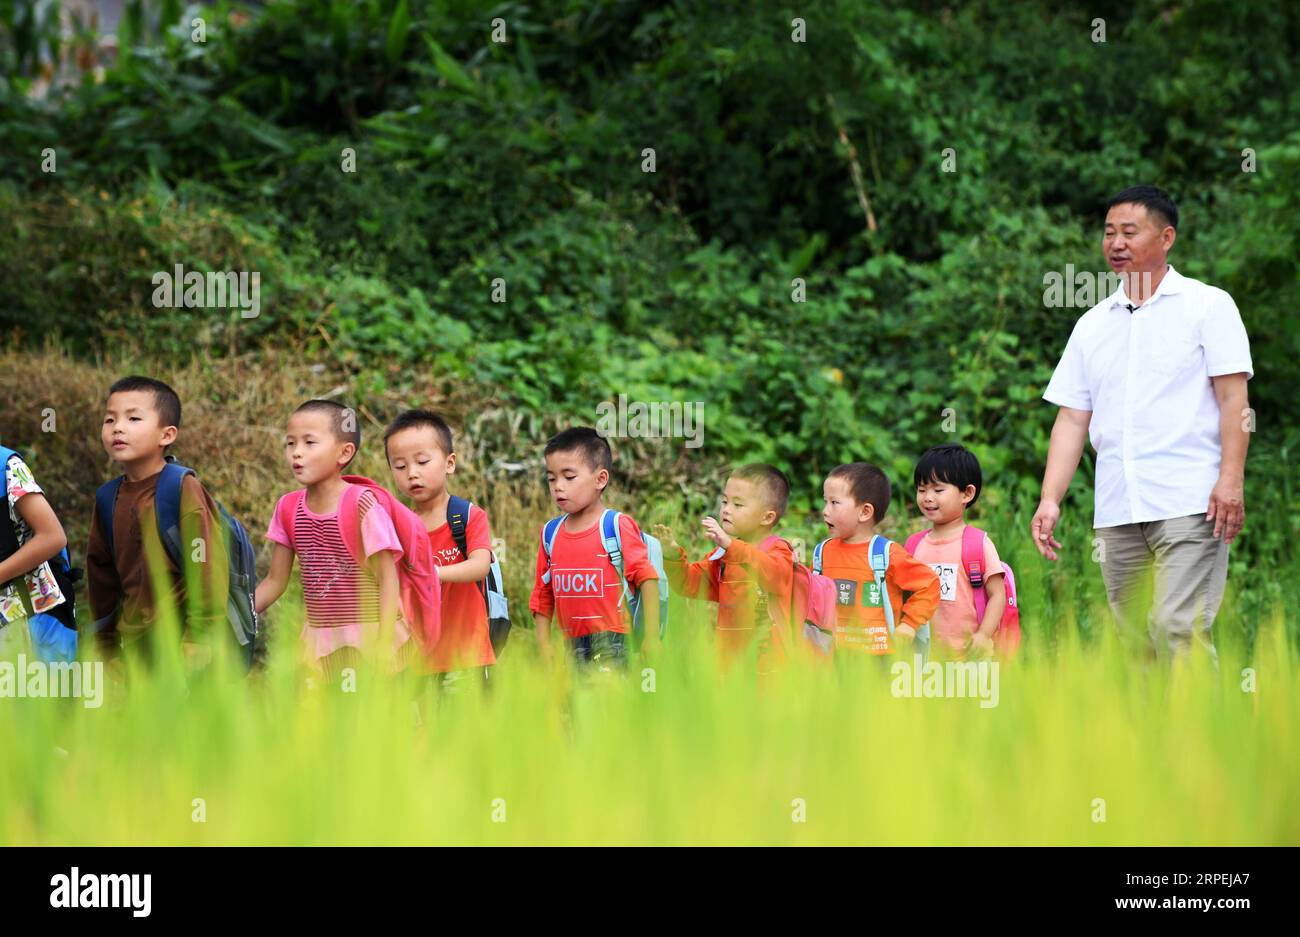 (190830) -- PECHINO, agosto 30, 2019 -- gli studenti sono scortati da Wu Guoxian per tornare a casa al villaggio di Liuguang della contea di Longli nella prefettura autonoma di Bouyei-Miao di Qiannan, nella provincia di Guizhou della Cina sud-occidentale, agosto 26, 2019. Situata nel profondo delle montagne, la scuola primaria Gugang nel villaggio di Liuguang ha accolto sei studenti dell'età prescolare e quattro studenti di prima elementare quando il nuovo semestre è iniziato lunedì. Saranno insegnati da Wu Guoxian, l'unico insegnante di scuola qui. Wu, 53 anni, ha lavorato nella scuola per 36 anni da quando si è diplomato in una scuola media nel 1983. La scuola aveva un decrepito edificio di insegnamento Foto Stock